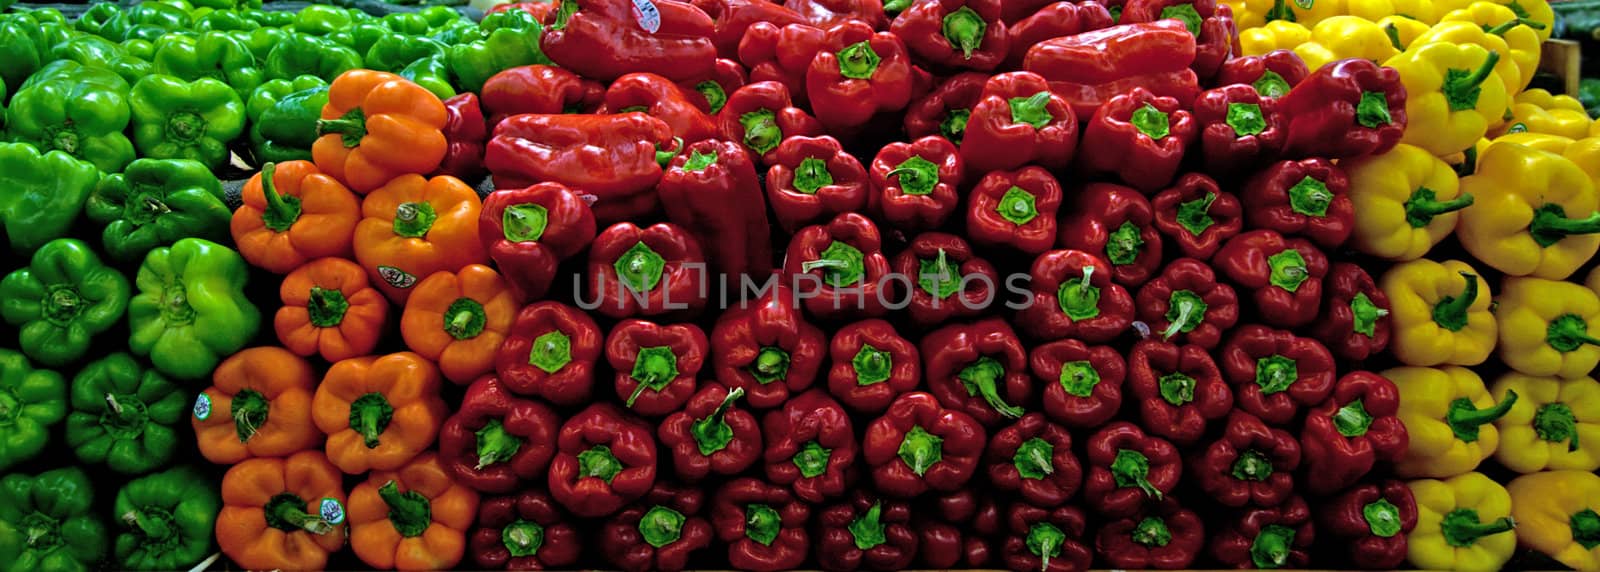 Bell Peppers on store shelf by GunterNezhoda